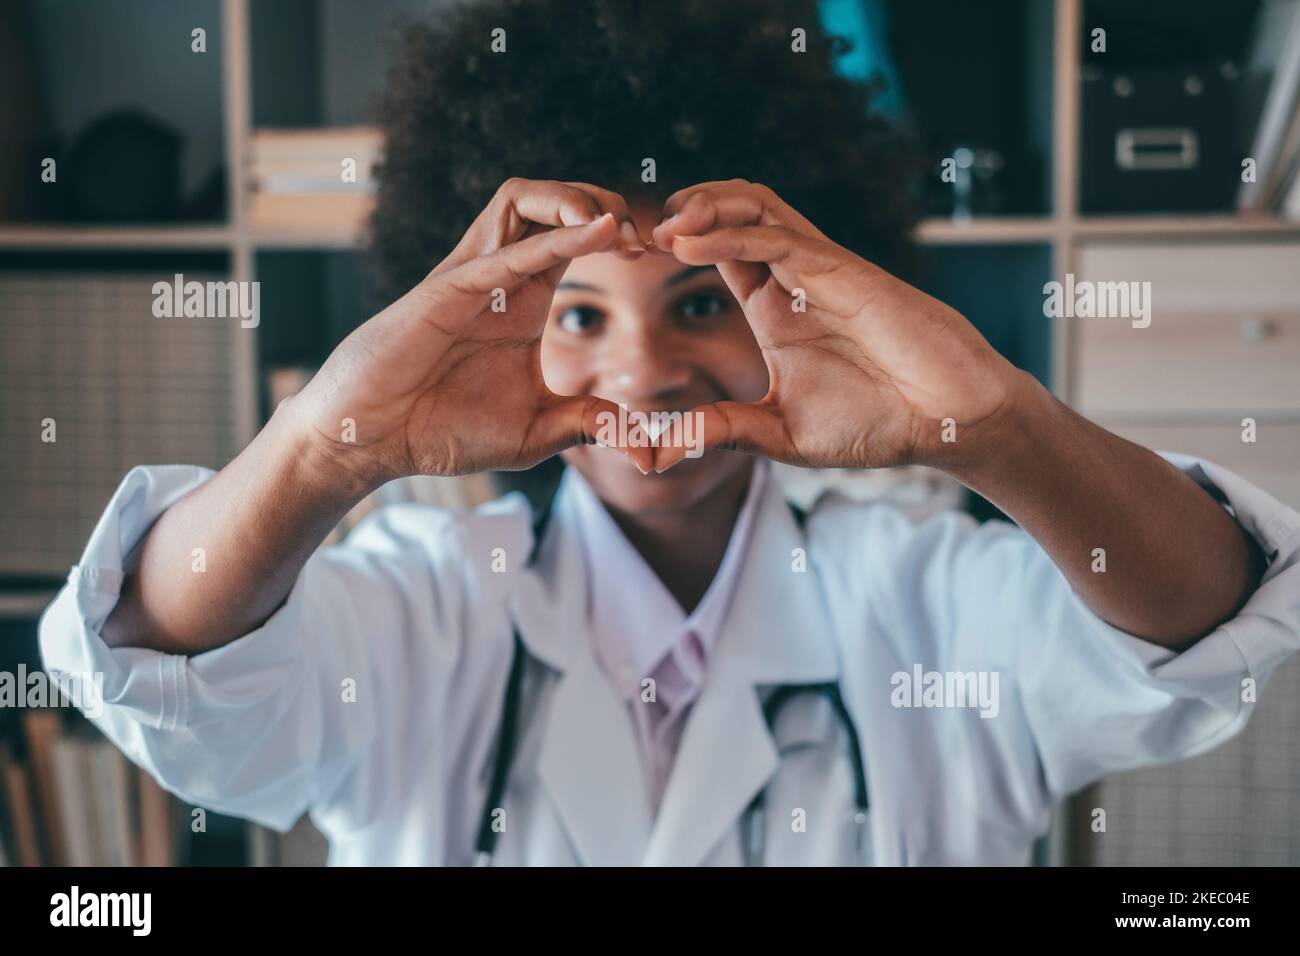 Femme faisant le geste de forme de coeur avec les mains. Femme noire souriante médecin faisant un symbole d'amour avec ses mains. Professionnel de la santé exprimant l'amour et le soutien aux patients Banque D'Images